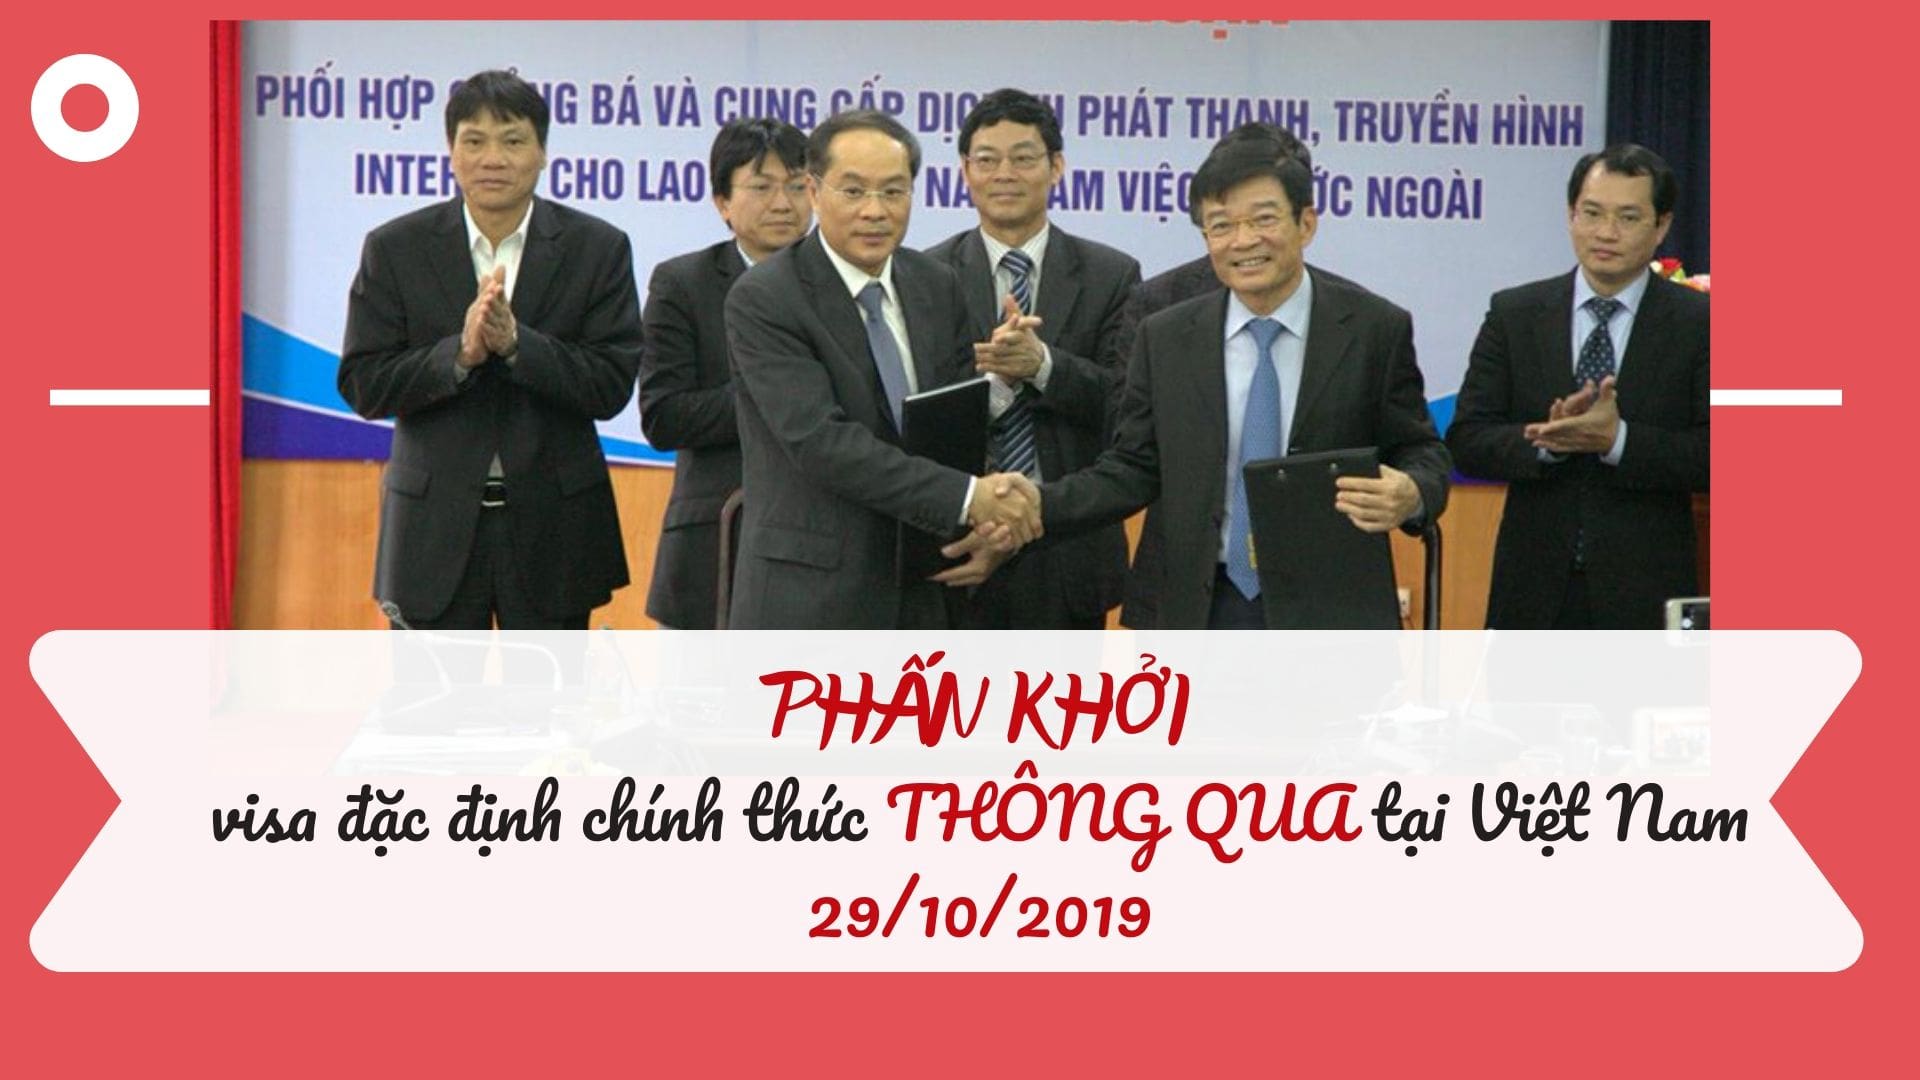 Chương trình visa đặc định tại Việt Nam chính thức được THÔNG QUA